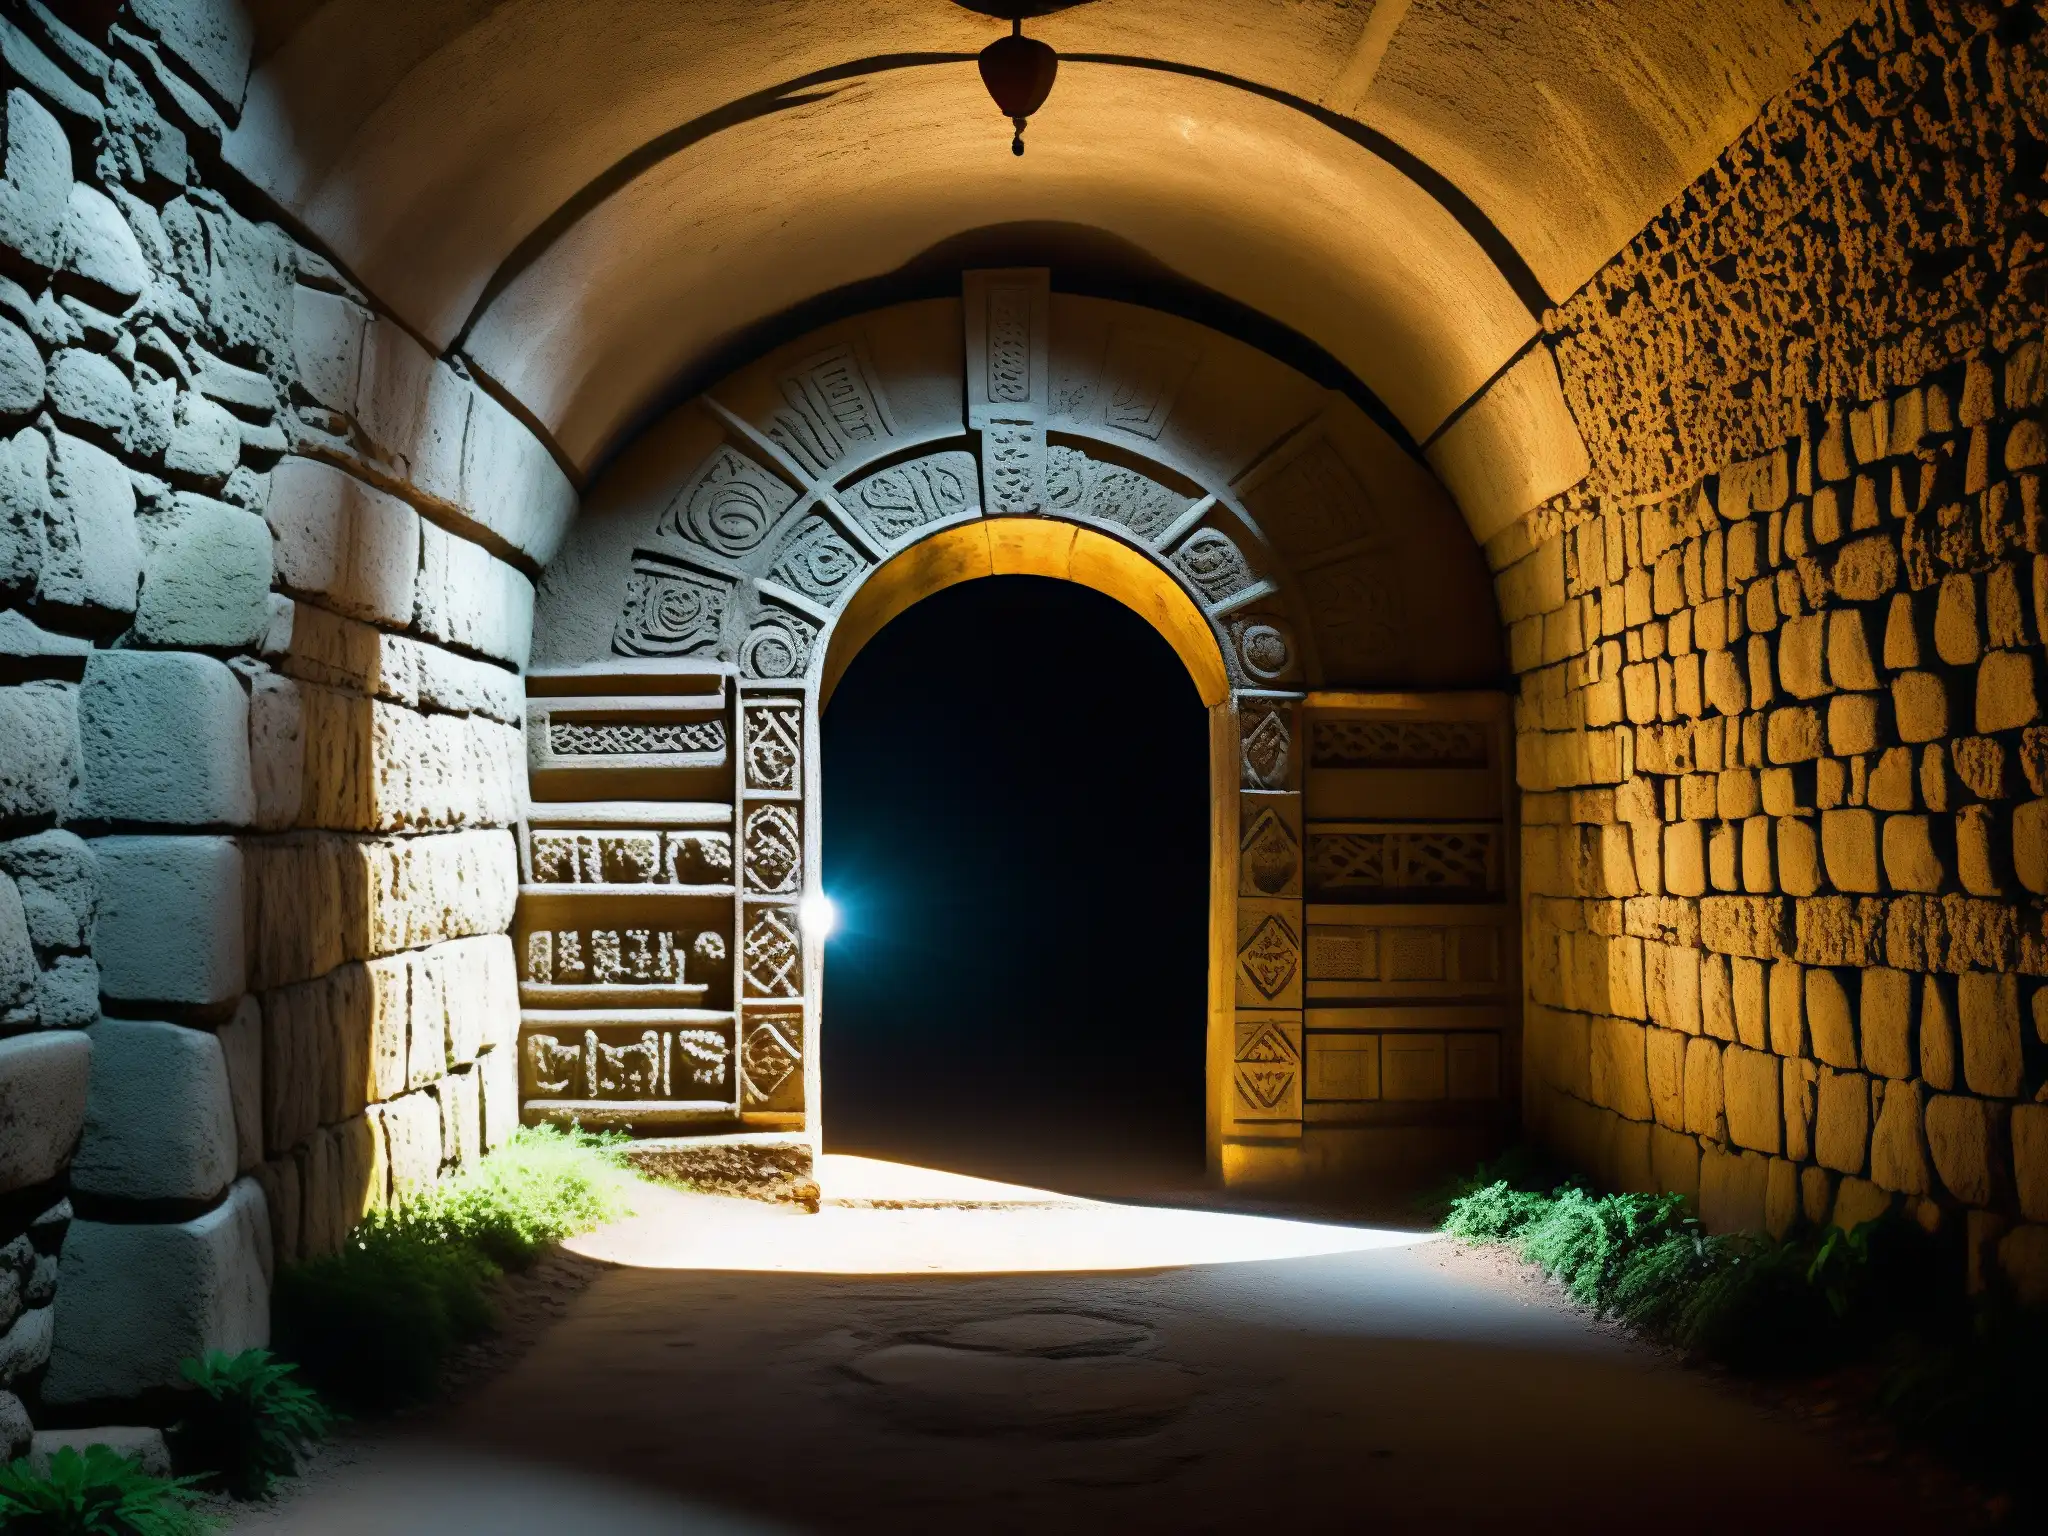 Entrada misteriosa al Tunel de la Llorona en Celaya, México, con símbolos y sombras, evocando su atmósfera enigmática